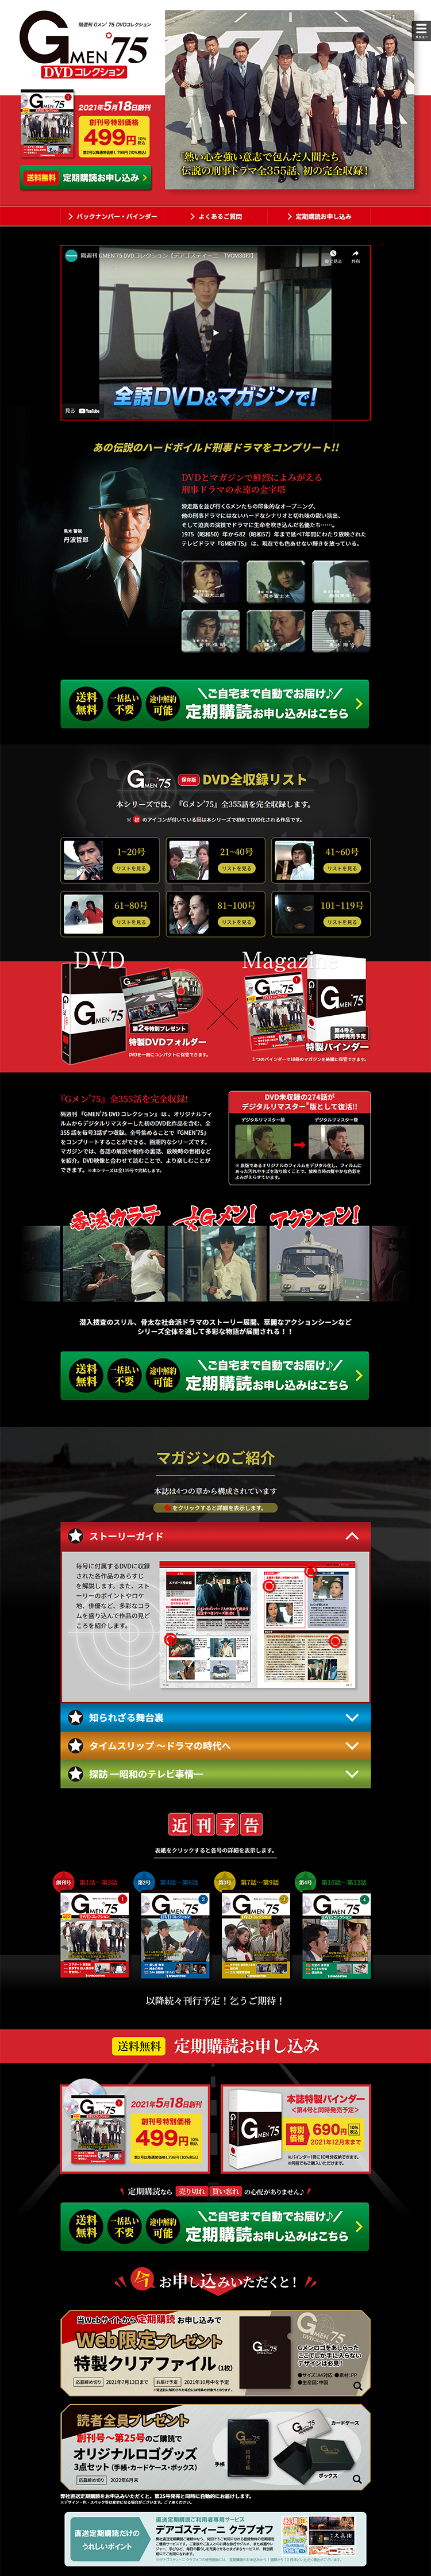 隔週刊 Gメン’75 DVDコレクション_pc_1